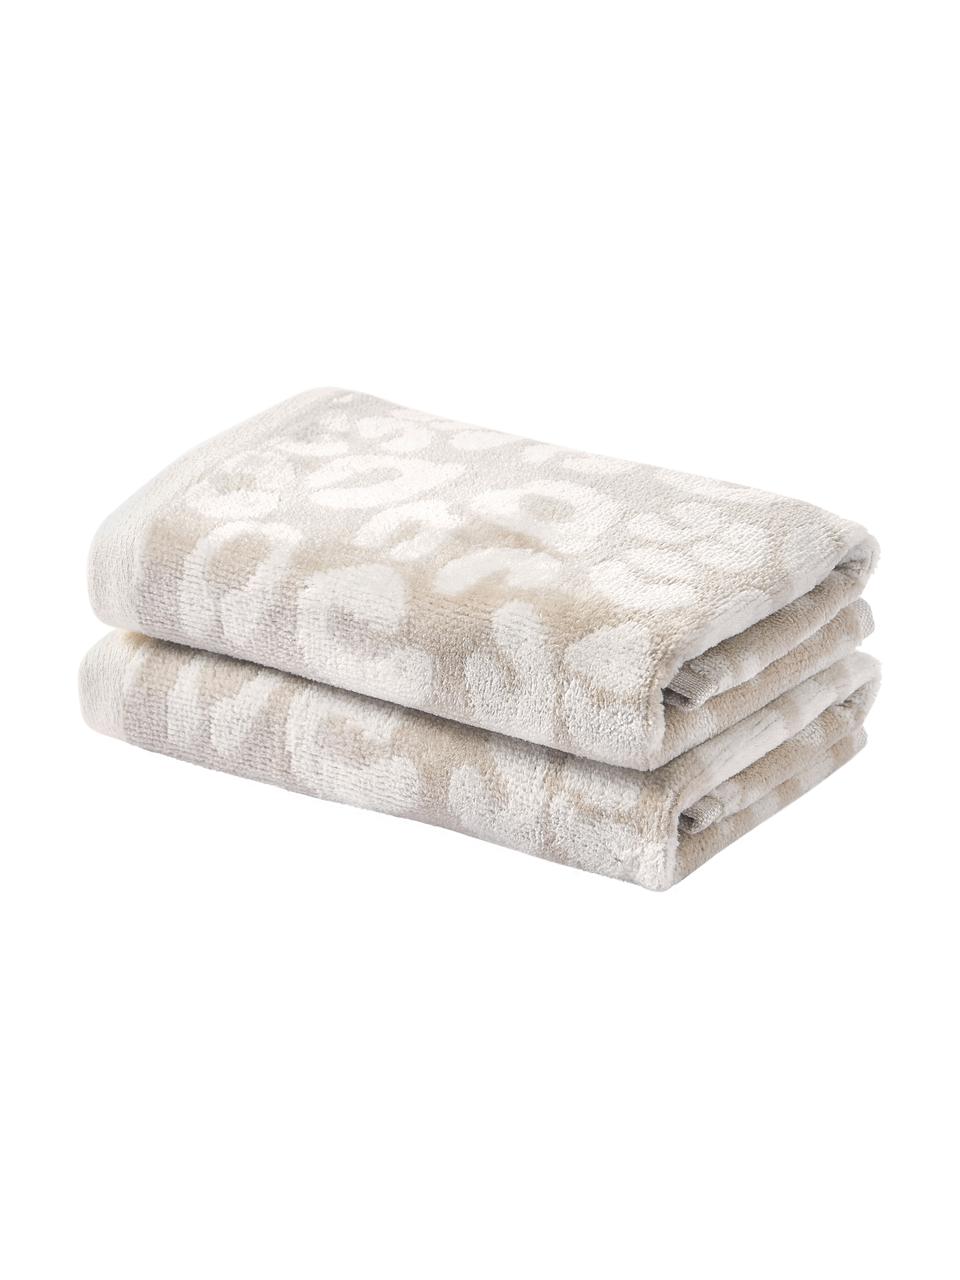 Asciugamano in diverse misure Leo, Tonalità beige, Asciugamano per ospiti XS, Larg. 30 x Lung. 50 cm, 2 pz